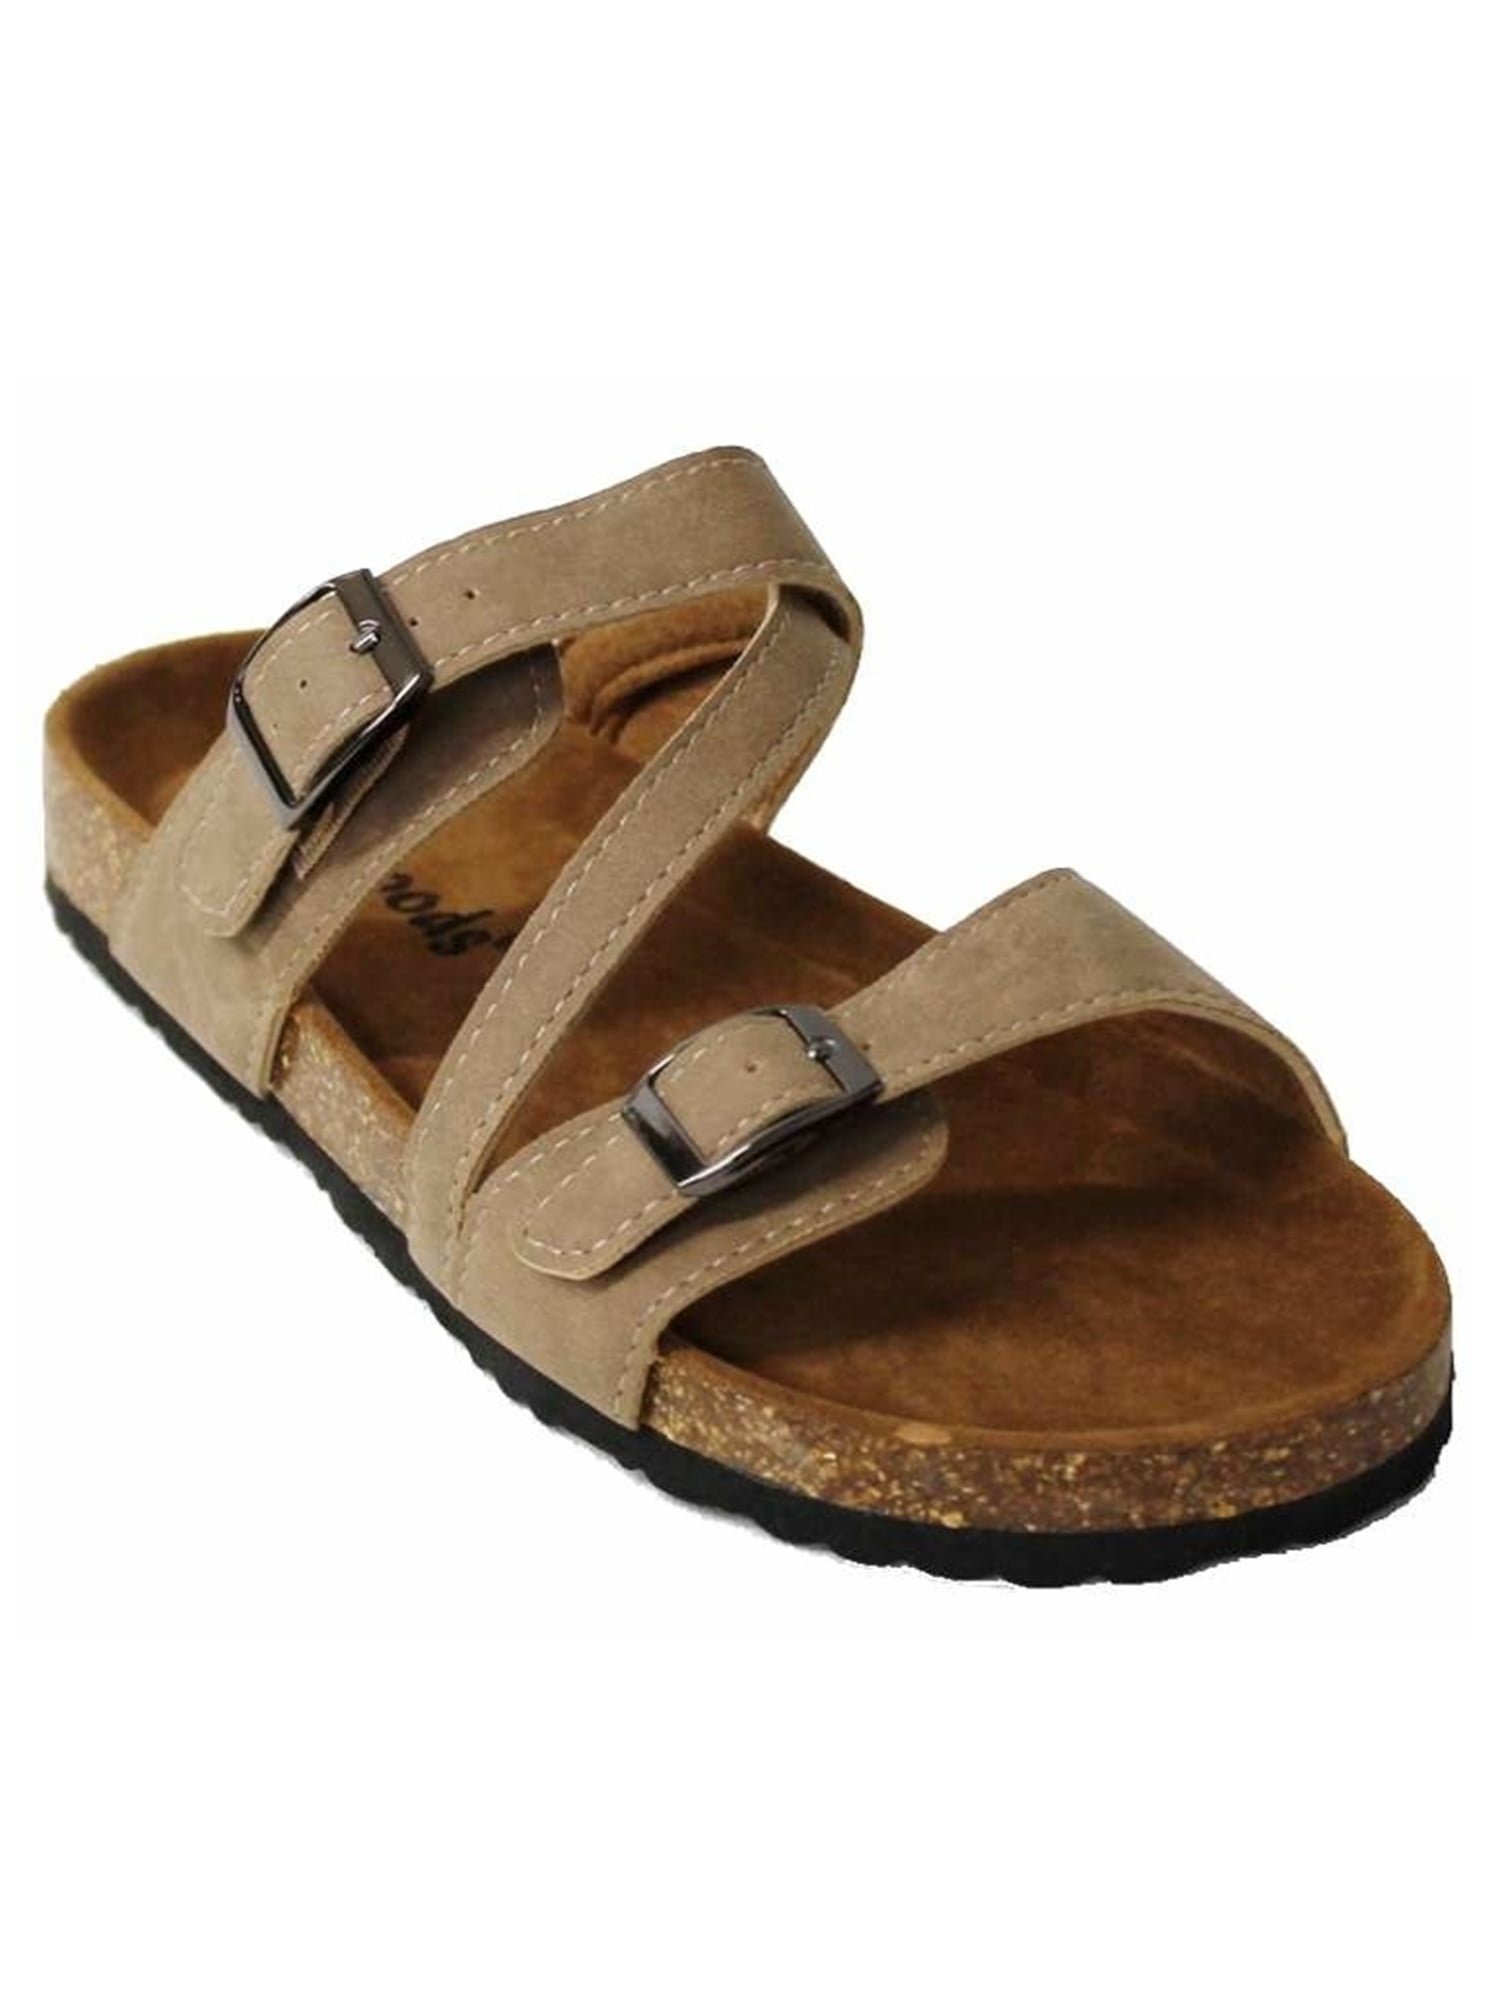 Outwoods Womens Sandals - Walmart.com